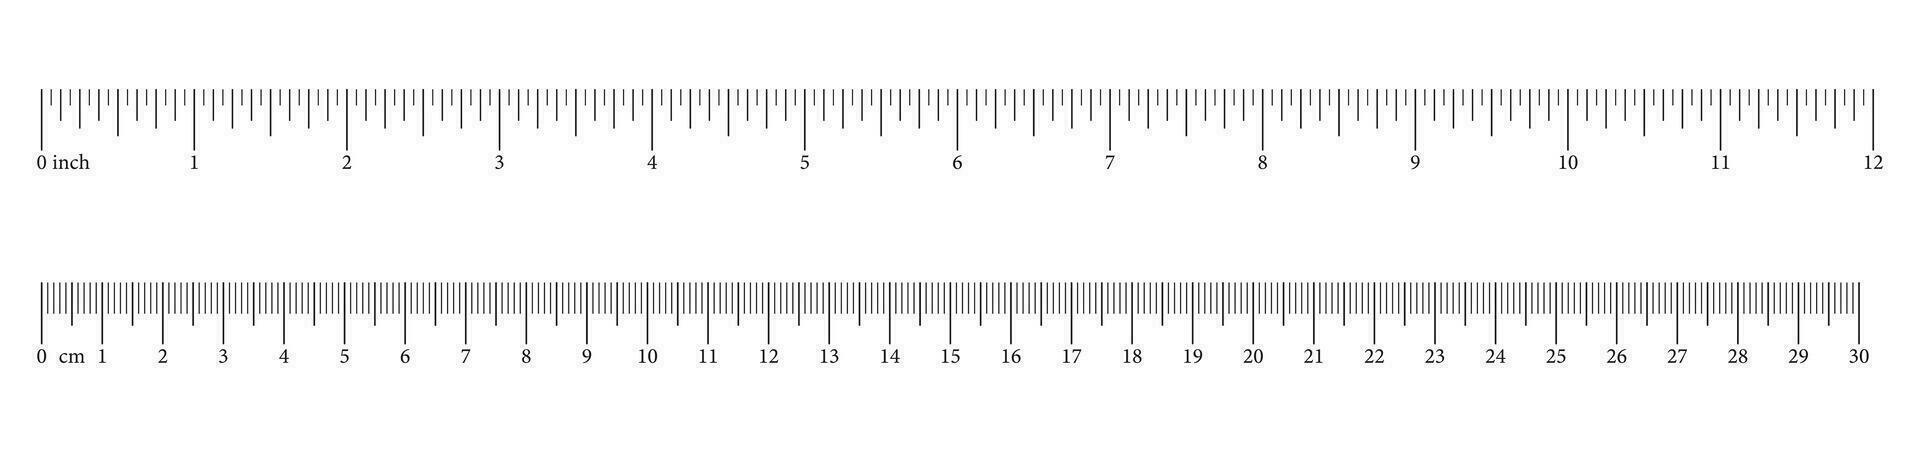 mesure graphiques avec 30 centimètres, 12 pouces. dirigeants échelle avec Nombres. longueur la mesure mathématiques, distance, hauteur. ensemble de couture outil. vecteur illustration.